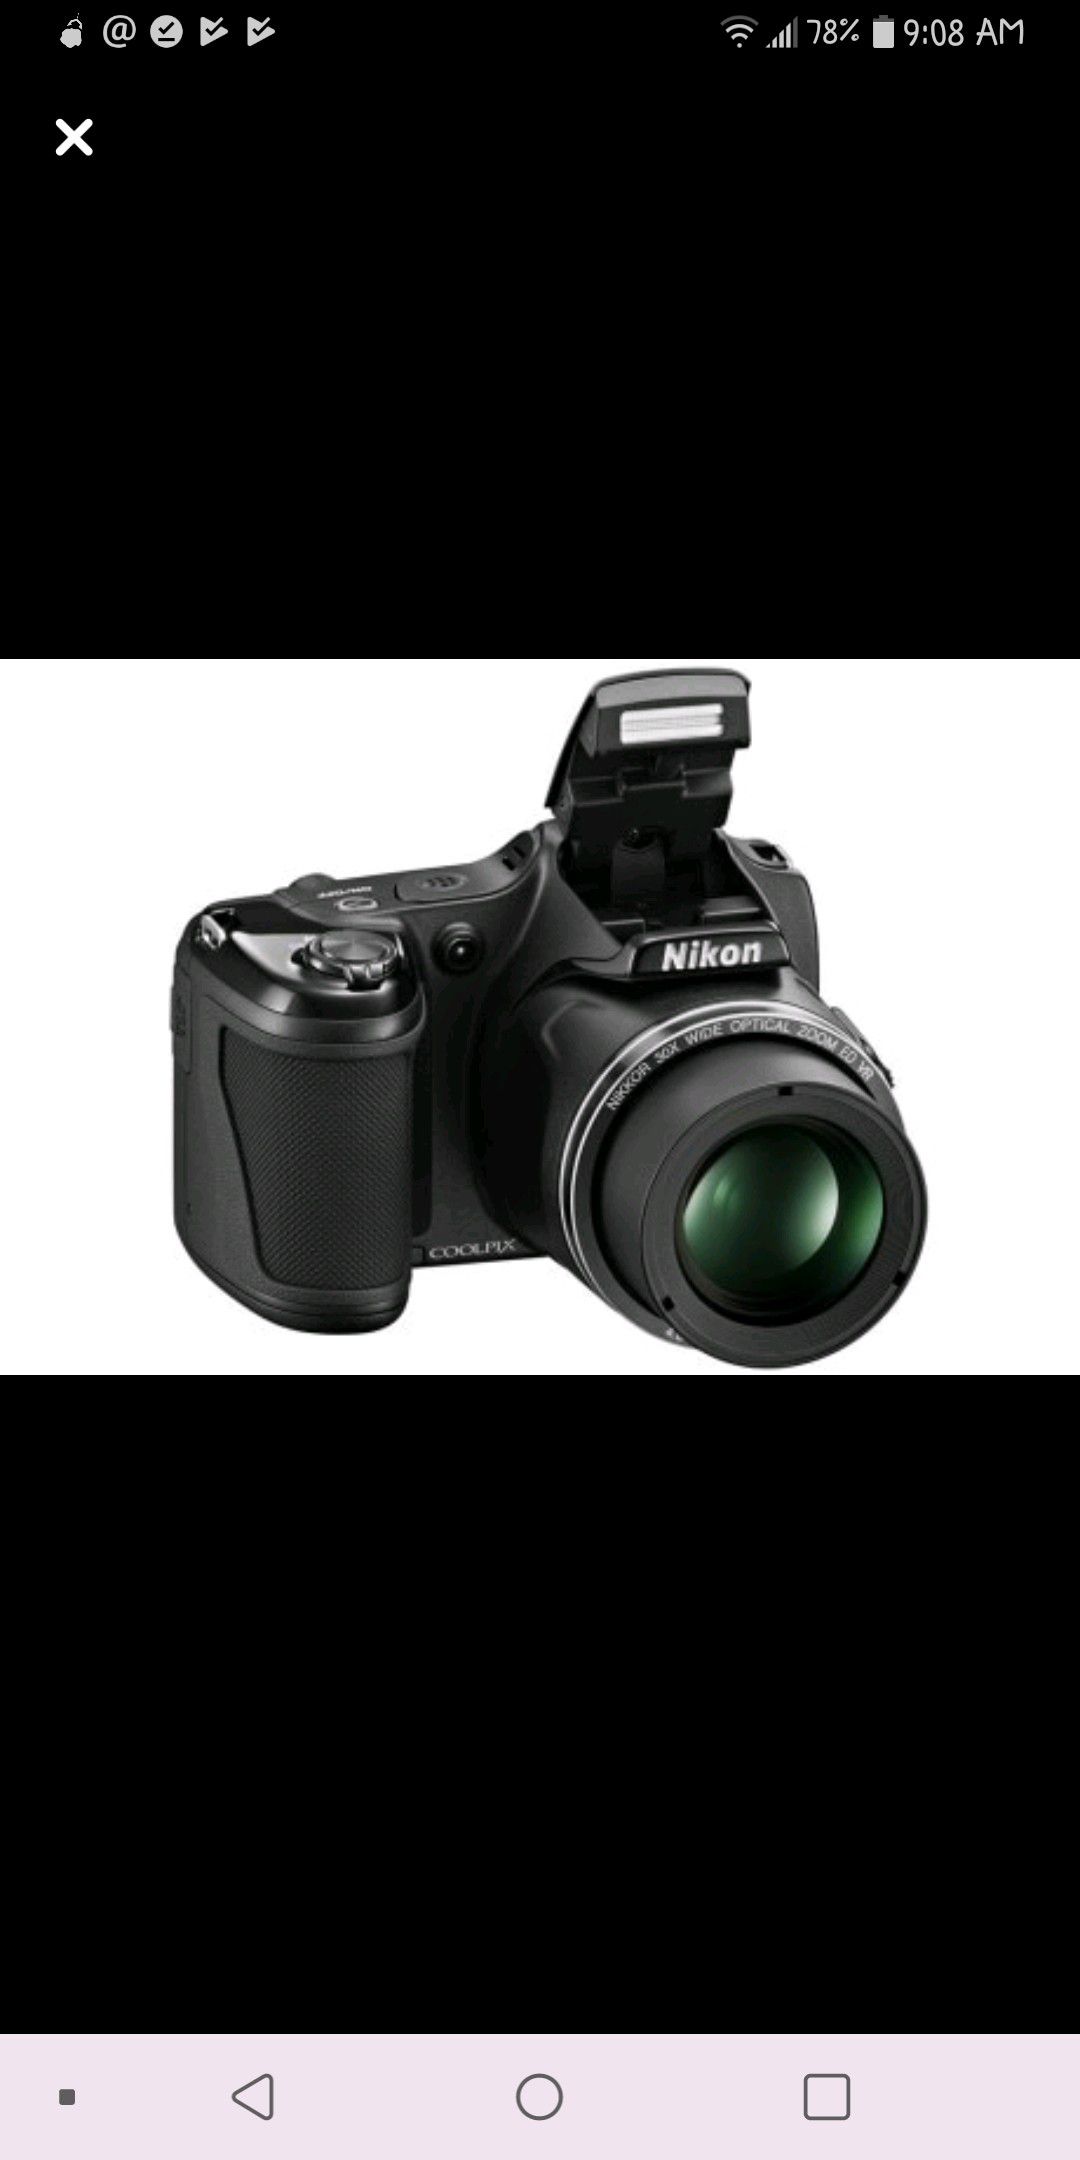 Nikon Coolpix L820 Black Digital Camera